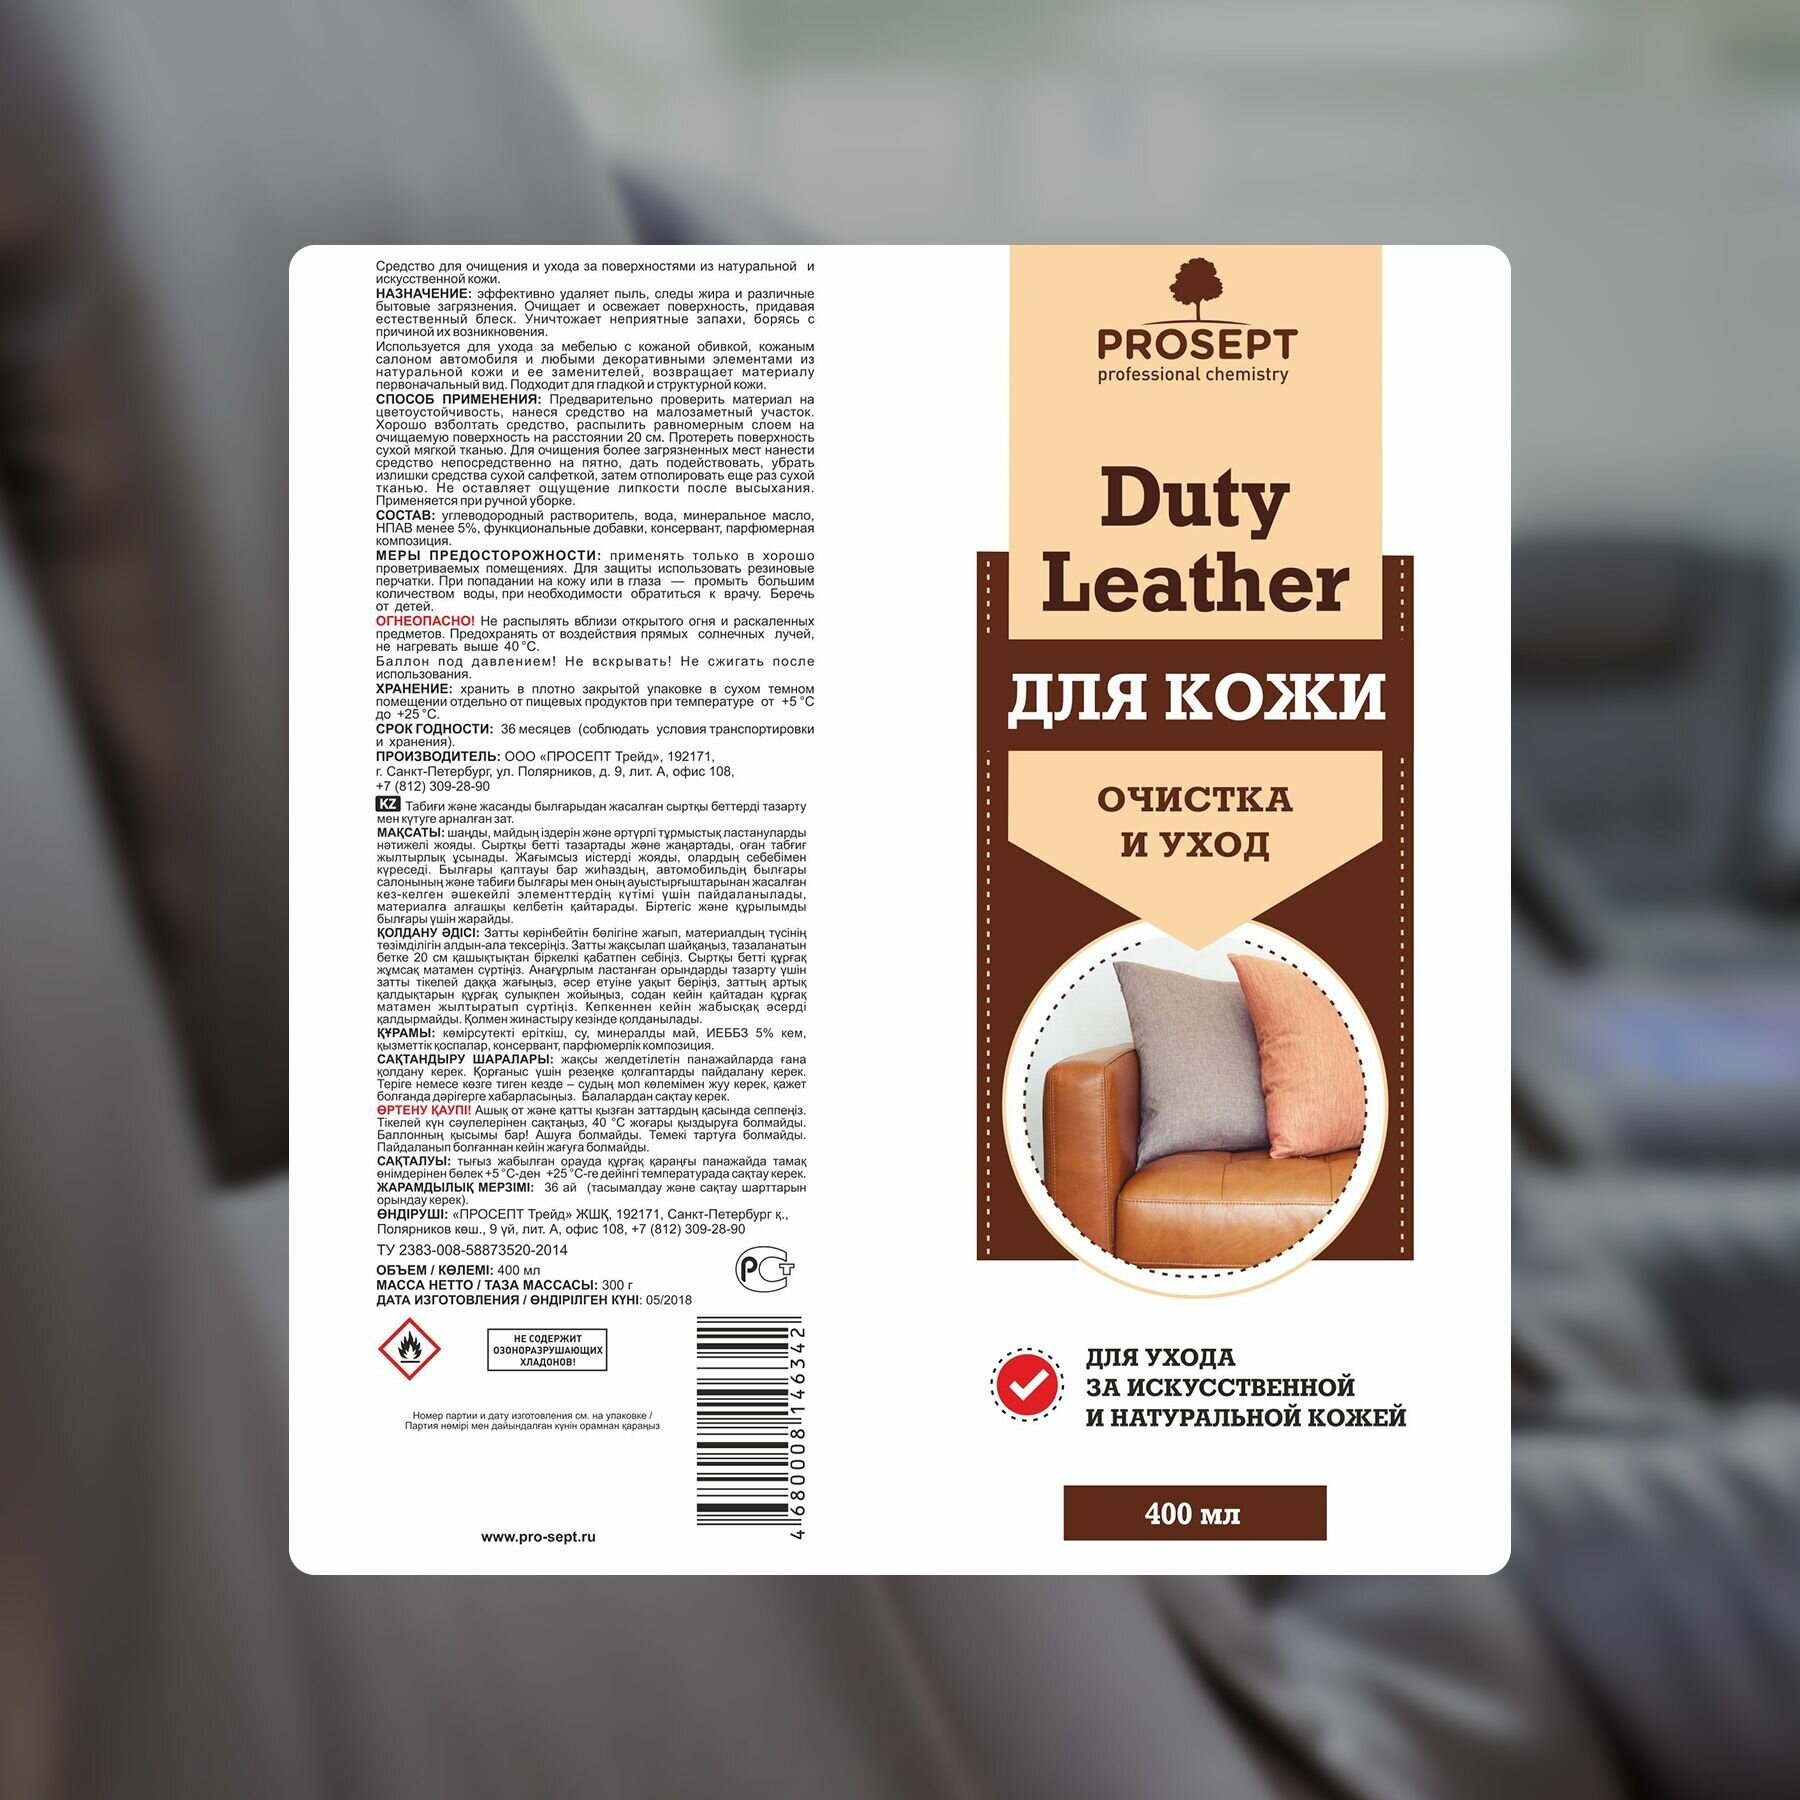 Аэрозоль для очистки и ухода за кожей Duty Leather PROSEPT